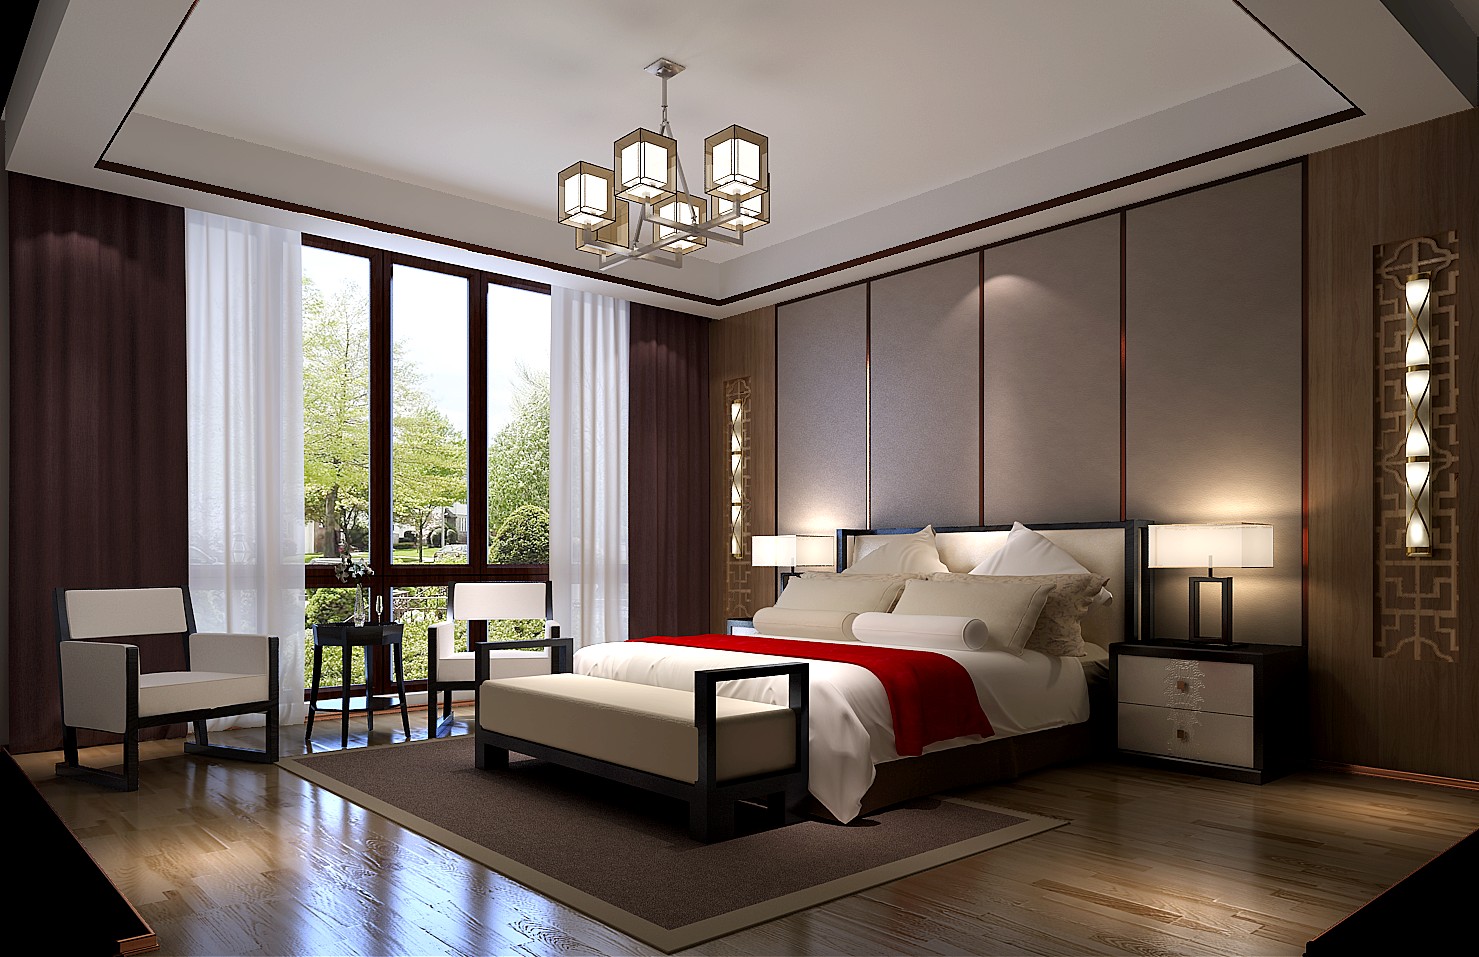 独栋 别墅 六居 卧室图片来自高度国际装饰宋增会在北京院子1064平米中式风格的分享